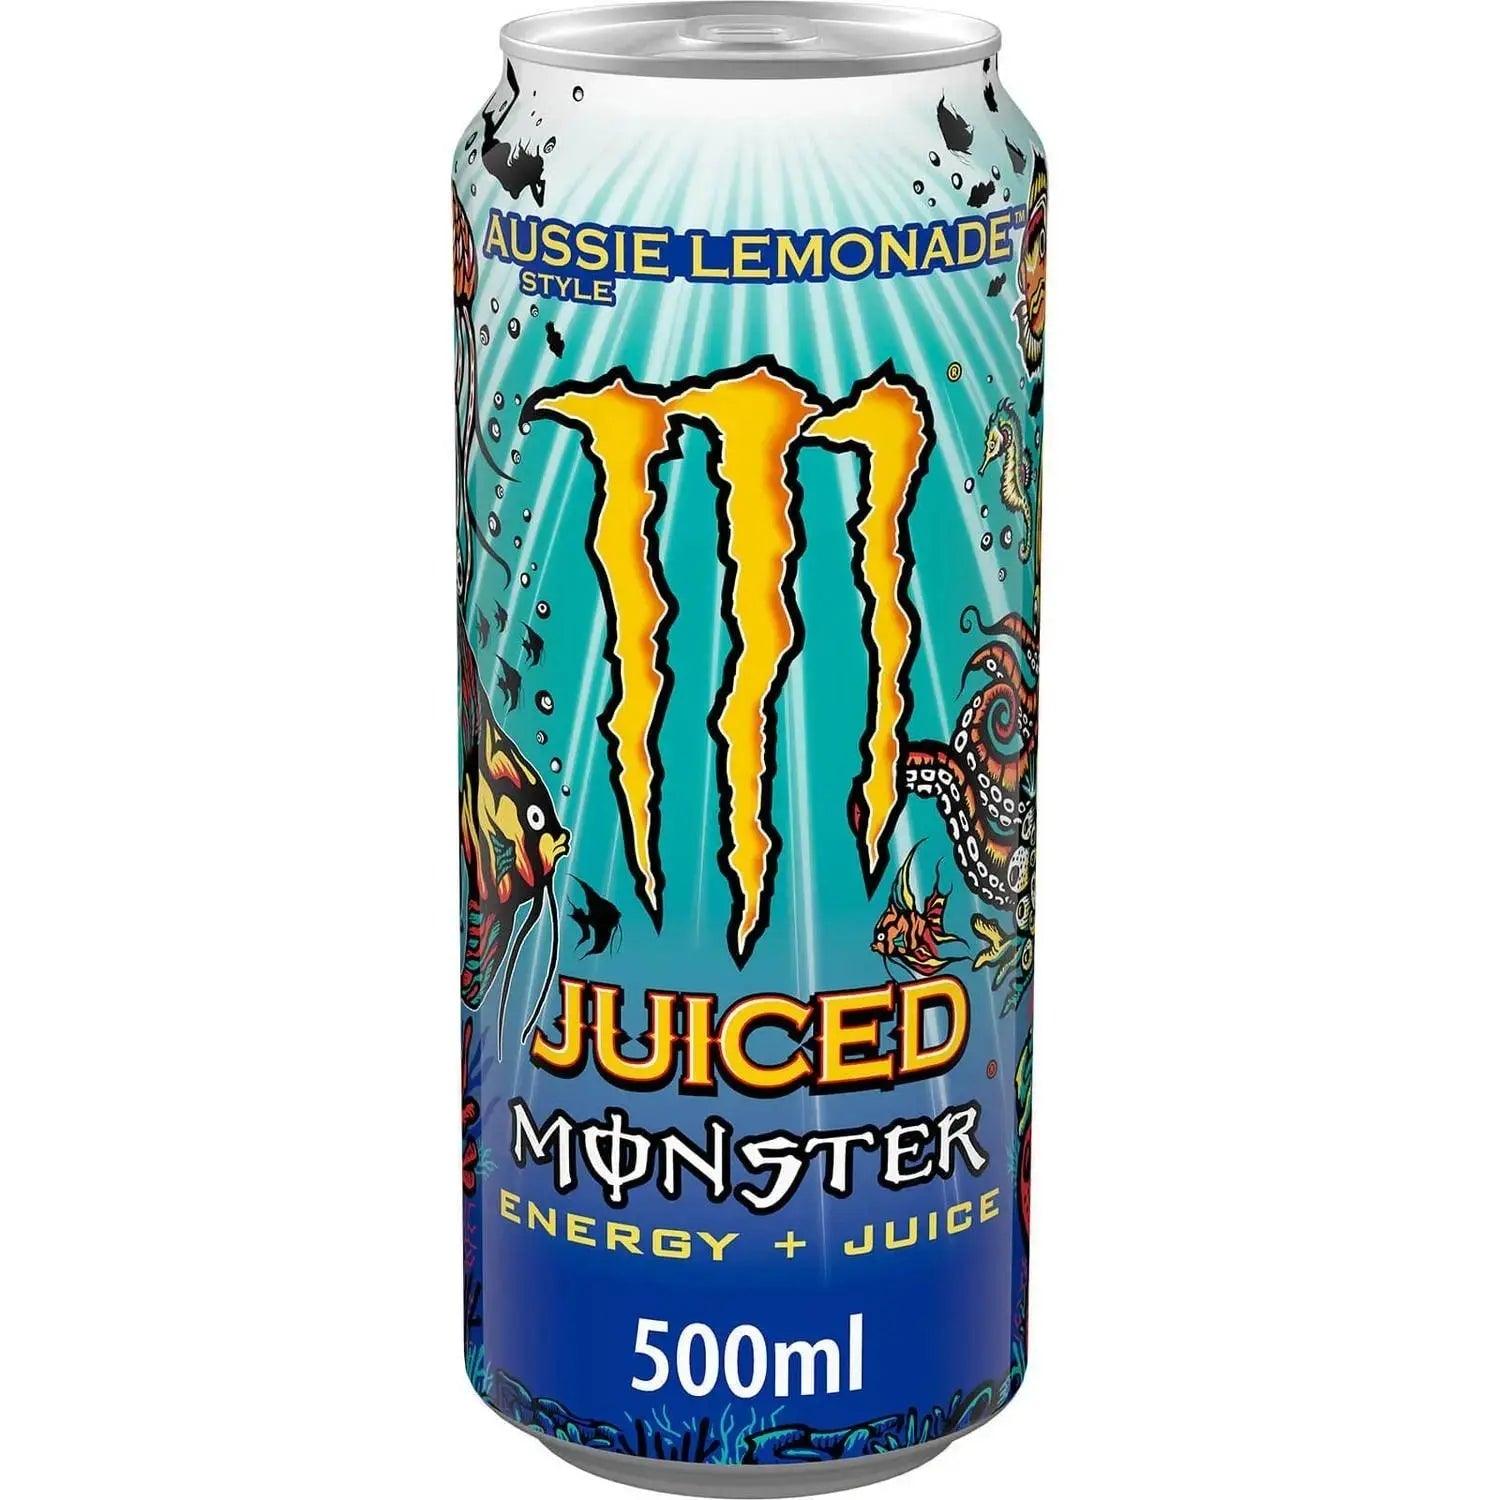 Monster Energy Drink Aussie Style Lemonade 12 x 500ml (Case of 12) - Honesty Sales U.K